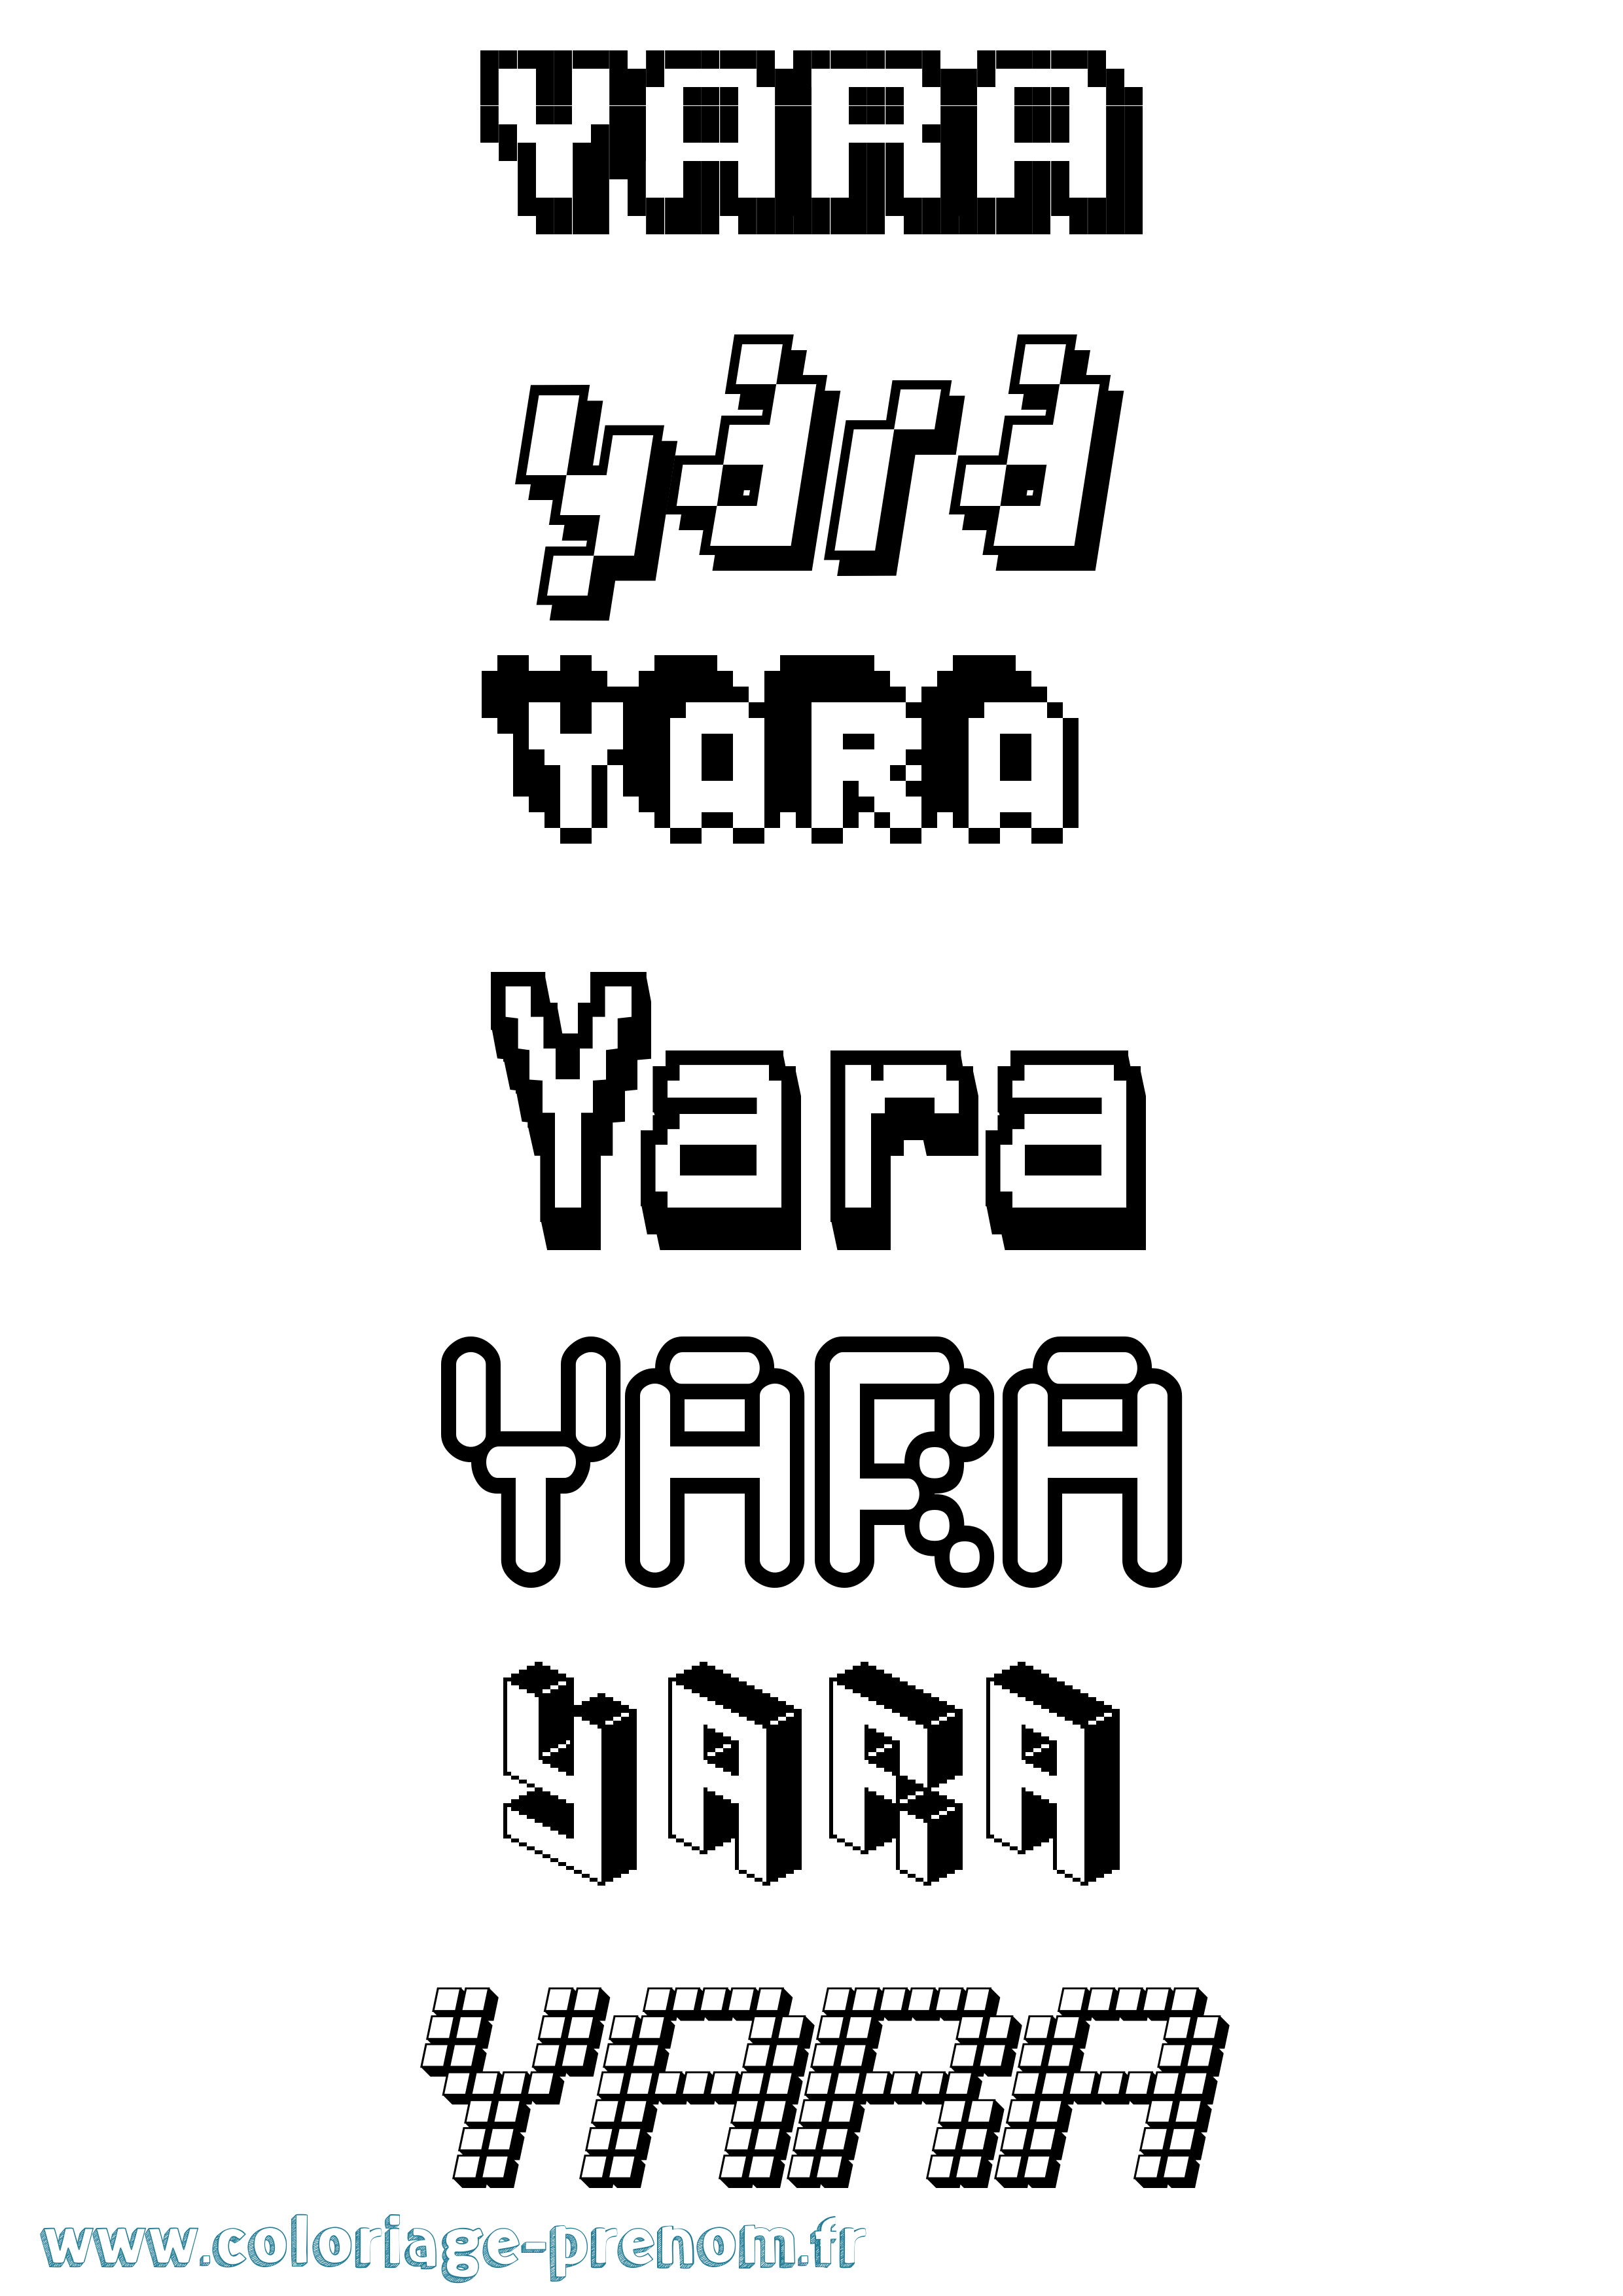 Coloriage prénom Yara